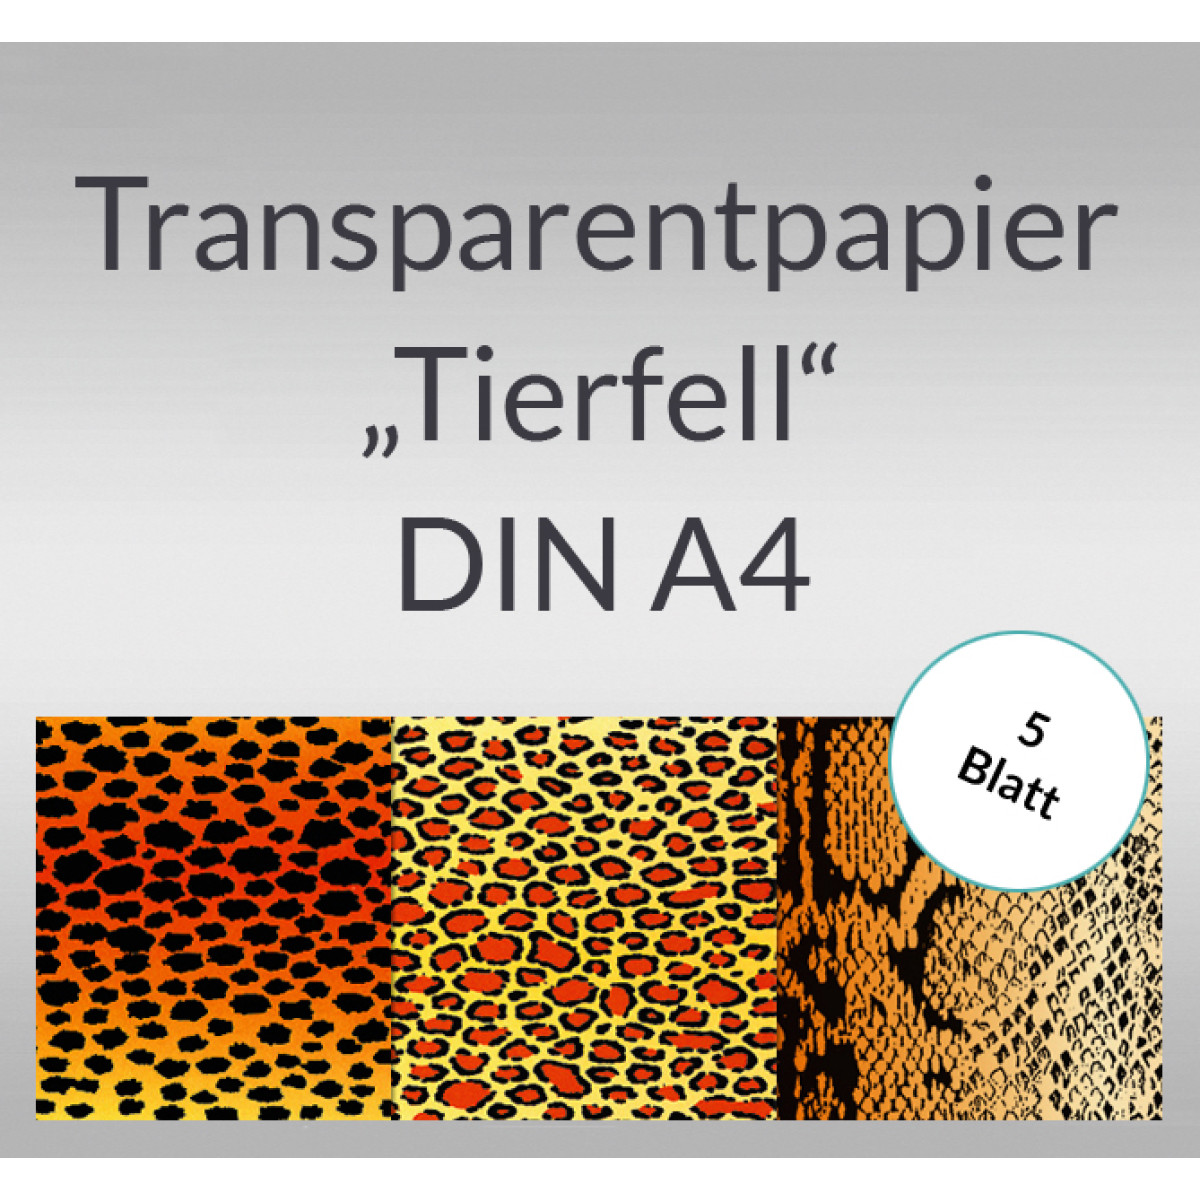 Transparentpapier "Tierfell" DIN A4 - 5 Blatt